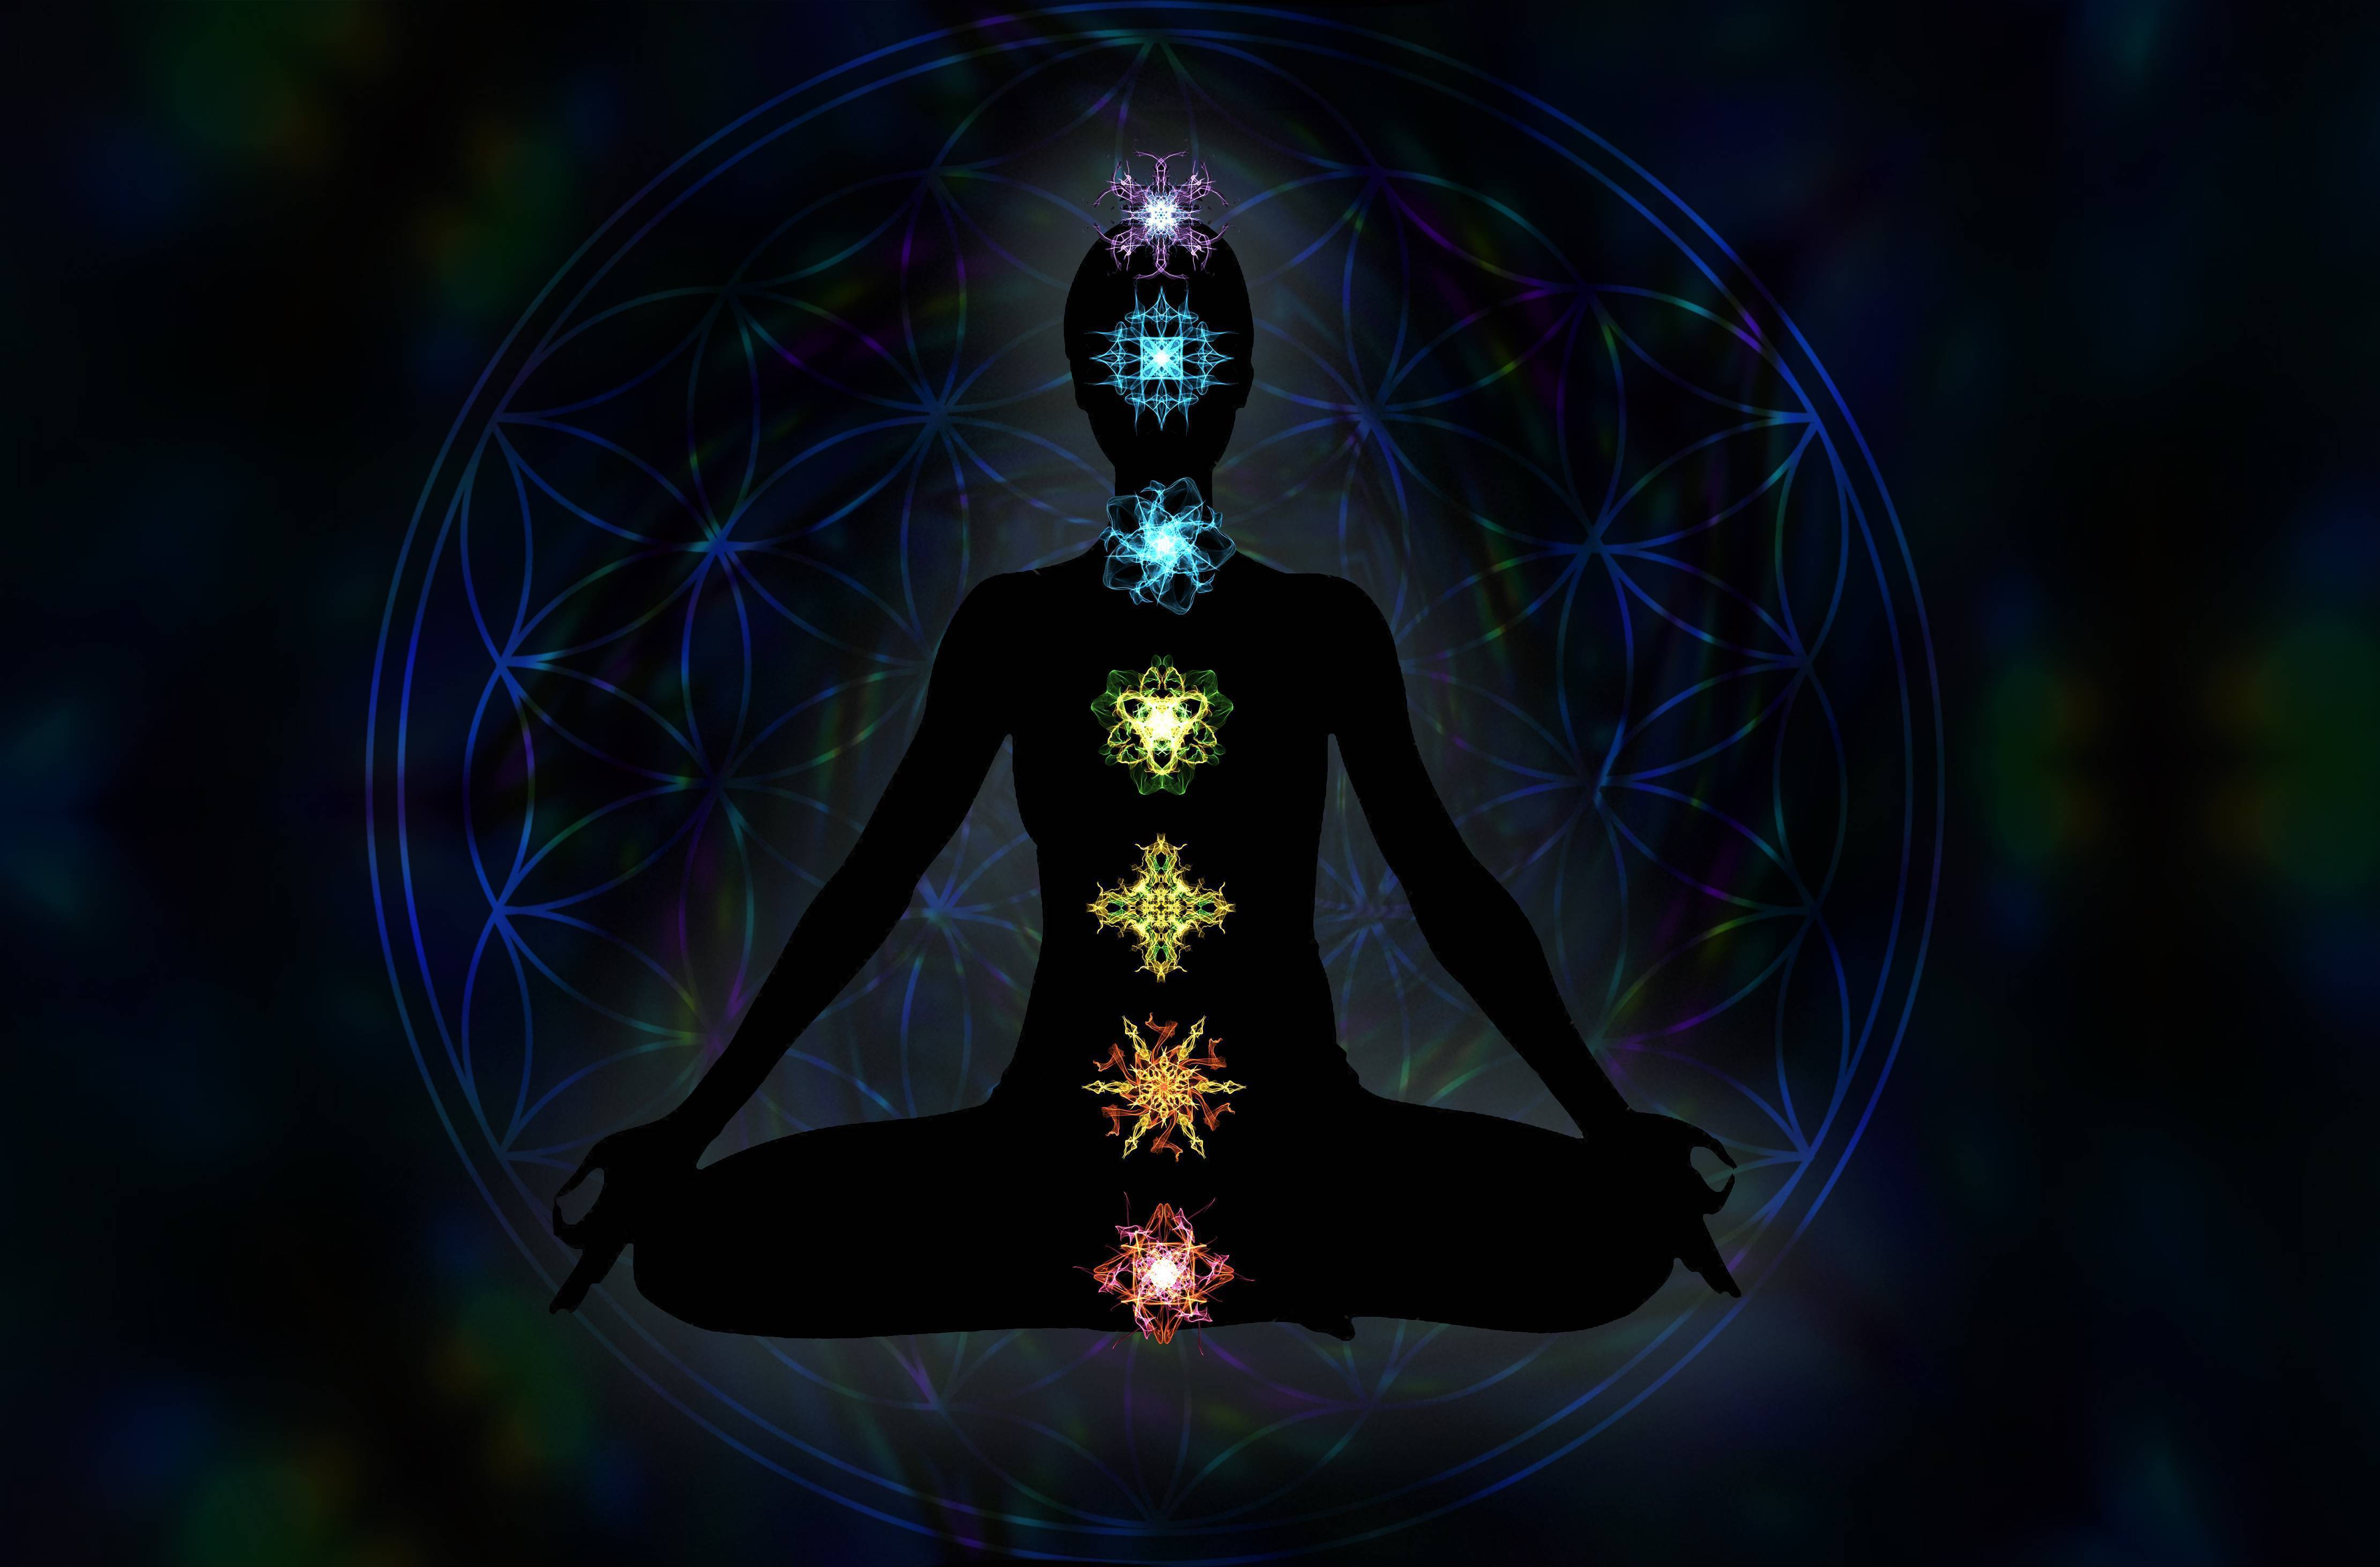 Кундалини йога 6 чакра, аджна чакра за что отвечает, аджна центр
кундалини йога 6 чакра, аджна чакра за что отвечает, аджна центр